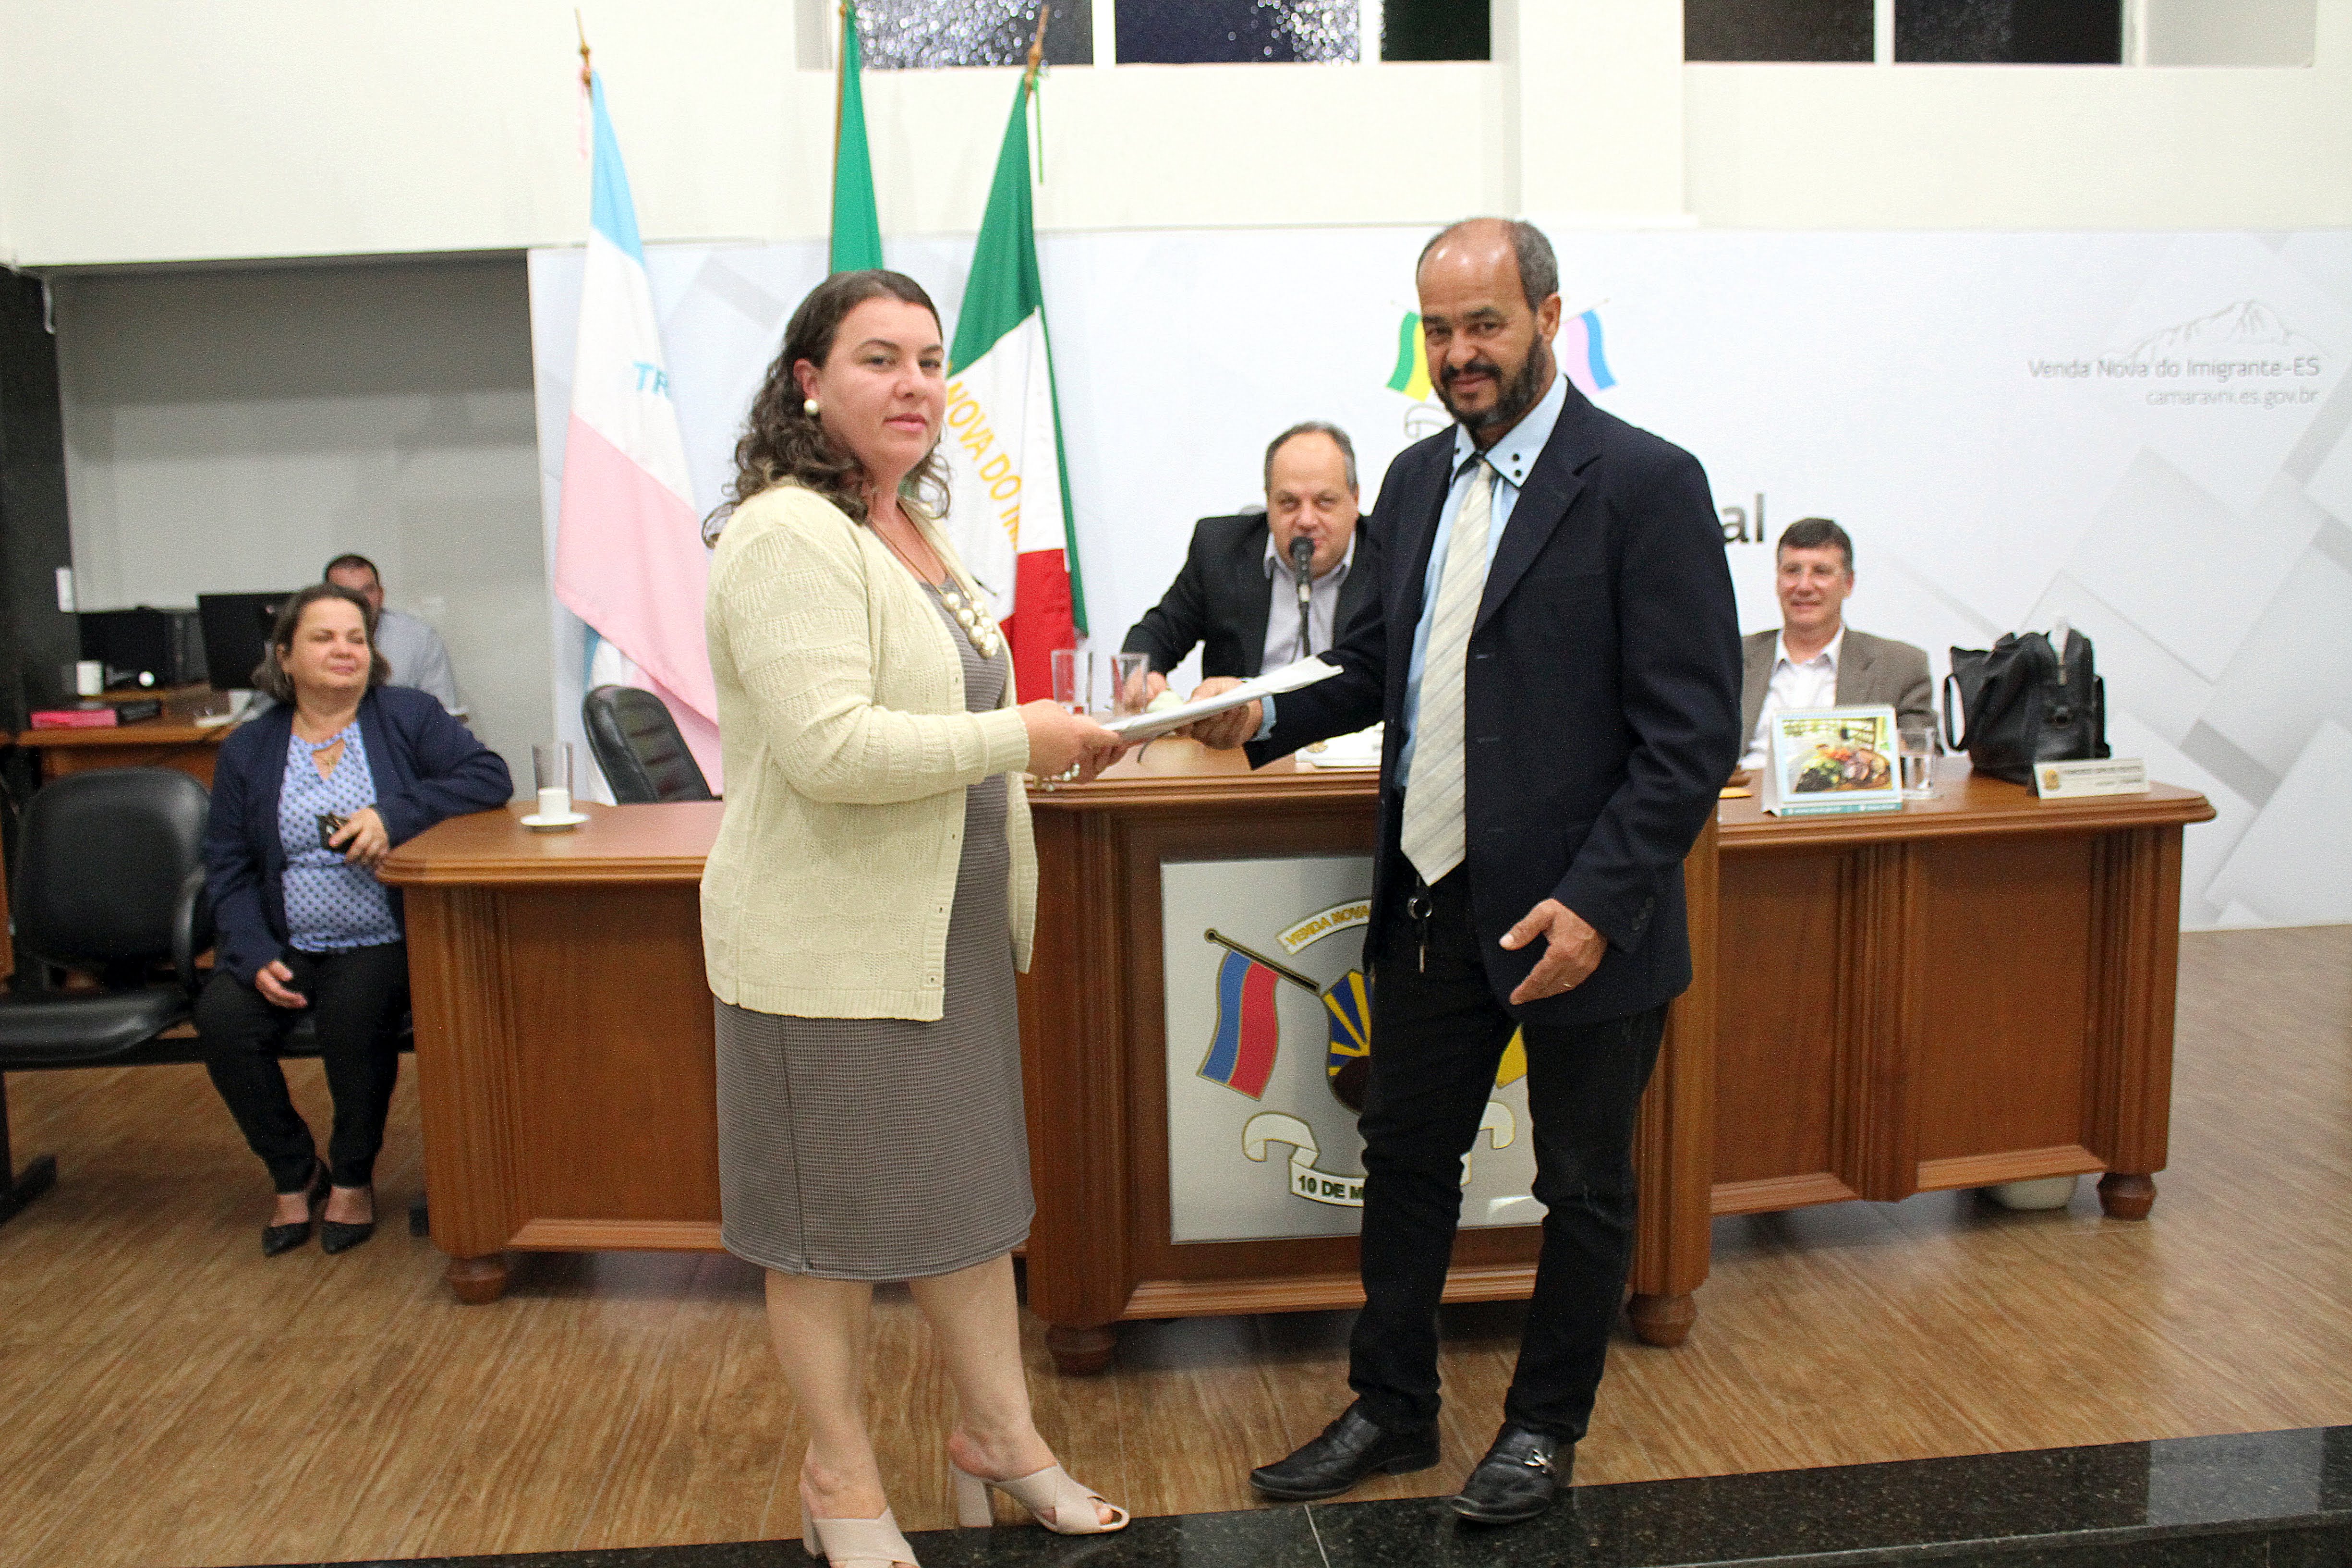 Elaine, mãe de aluno da APAE, entrega Carta com Reivindicações para o Presidente, José Luiz Pimenta de Sousa